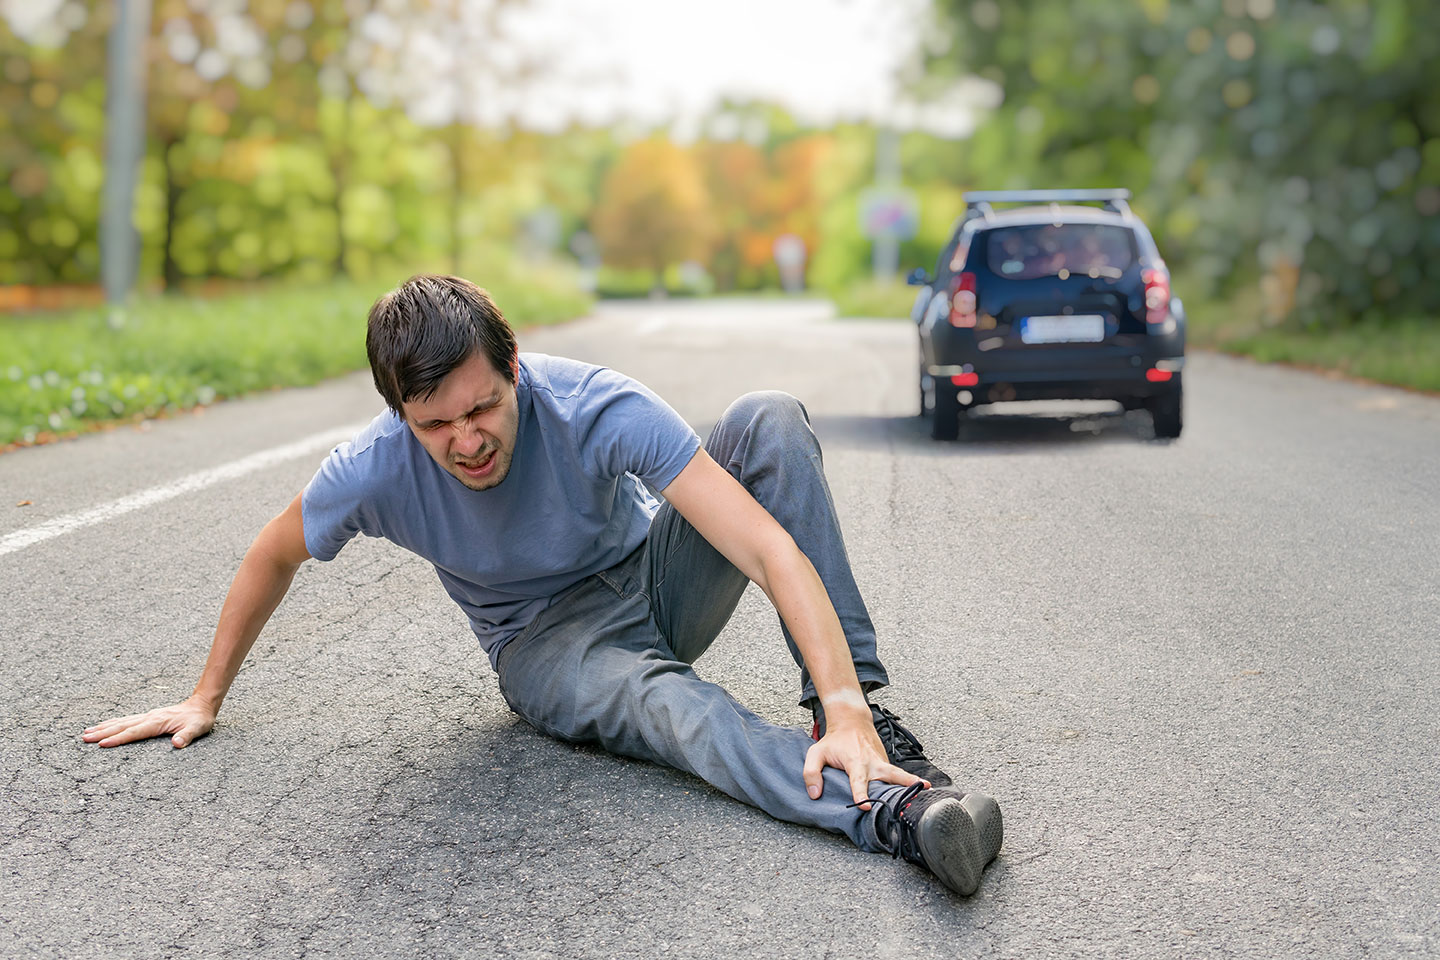 Injured Man Has Broken Leg Sitting on Road | Motor Vehicle Accident Lawyer | Gash & Associates, P.C.